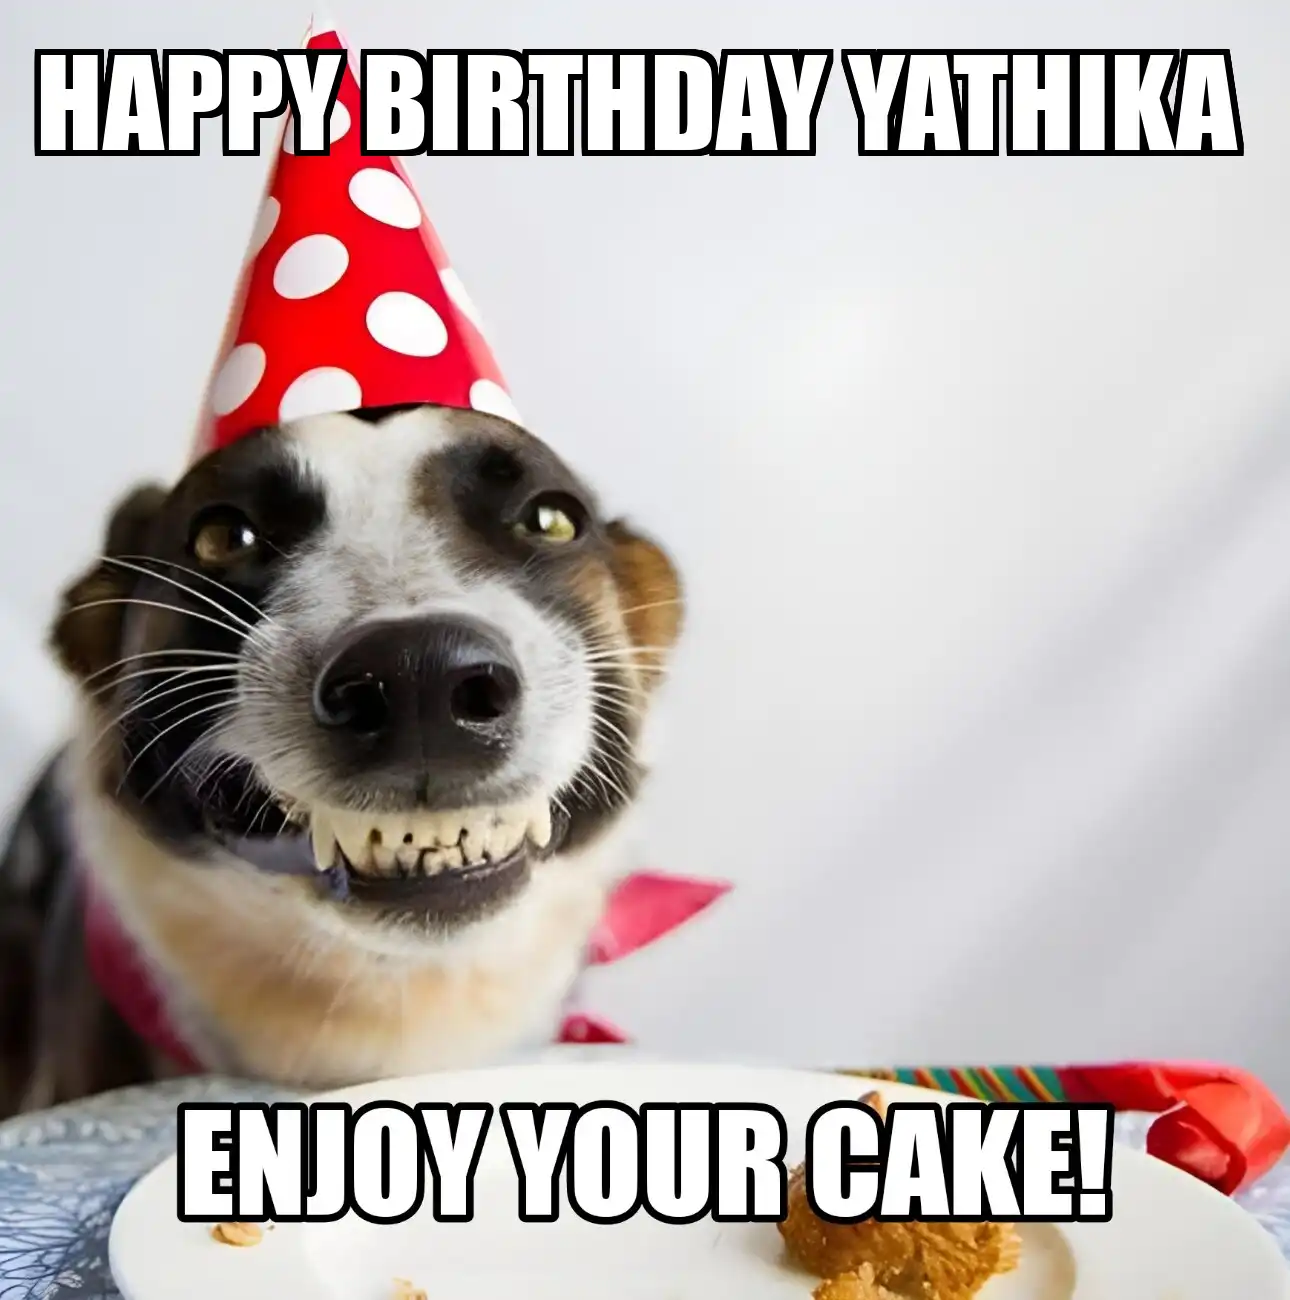 Happy Birthday Yathika Enjoy Your Cake Dog Meme